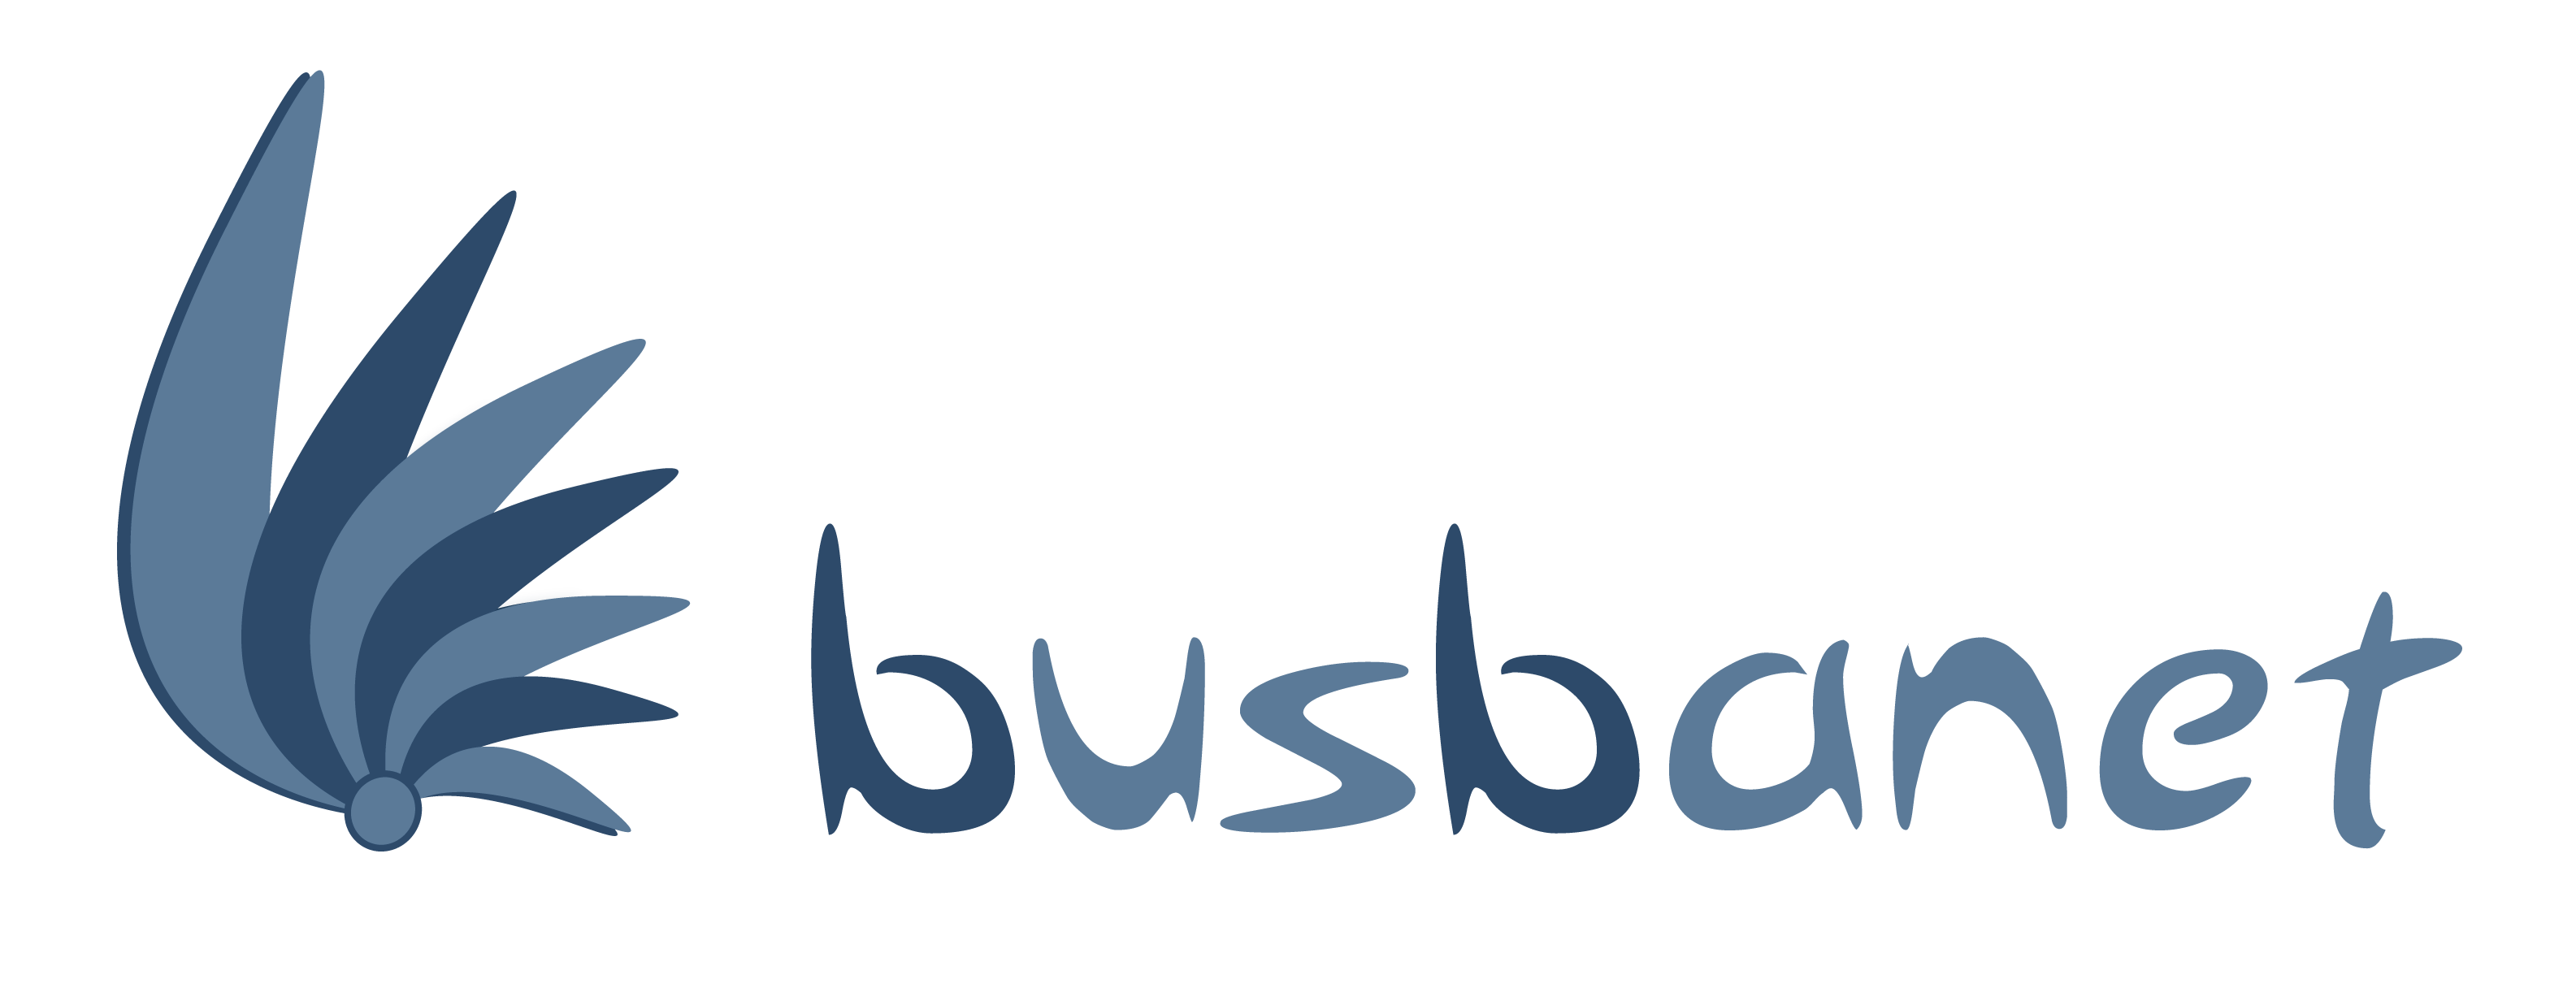 BusBanet - Alquiler de Microbuses